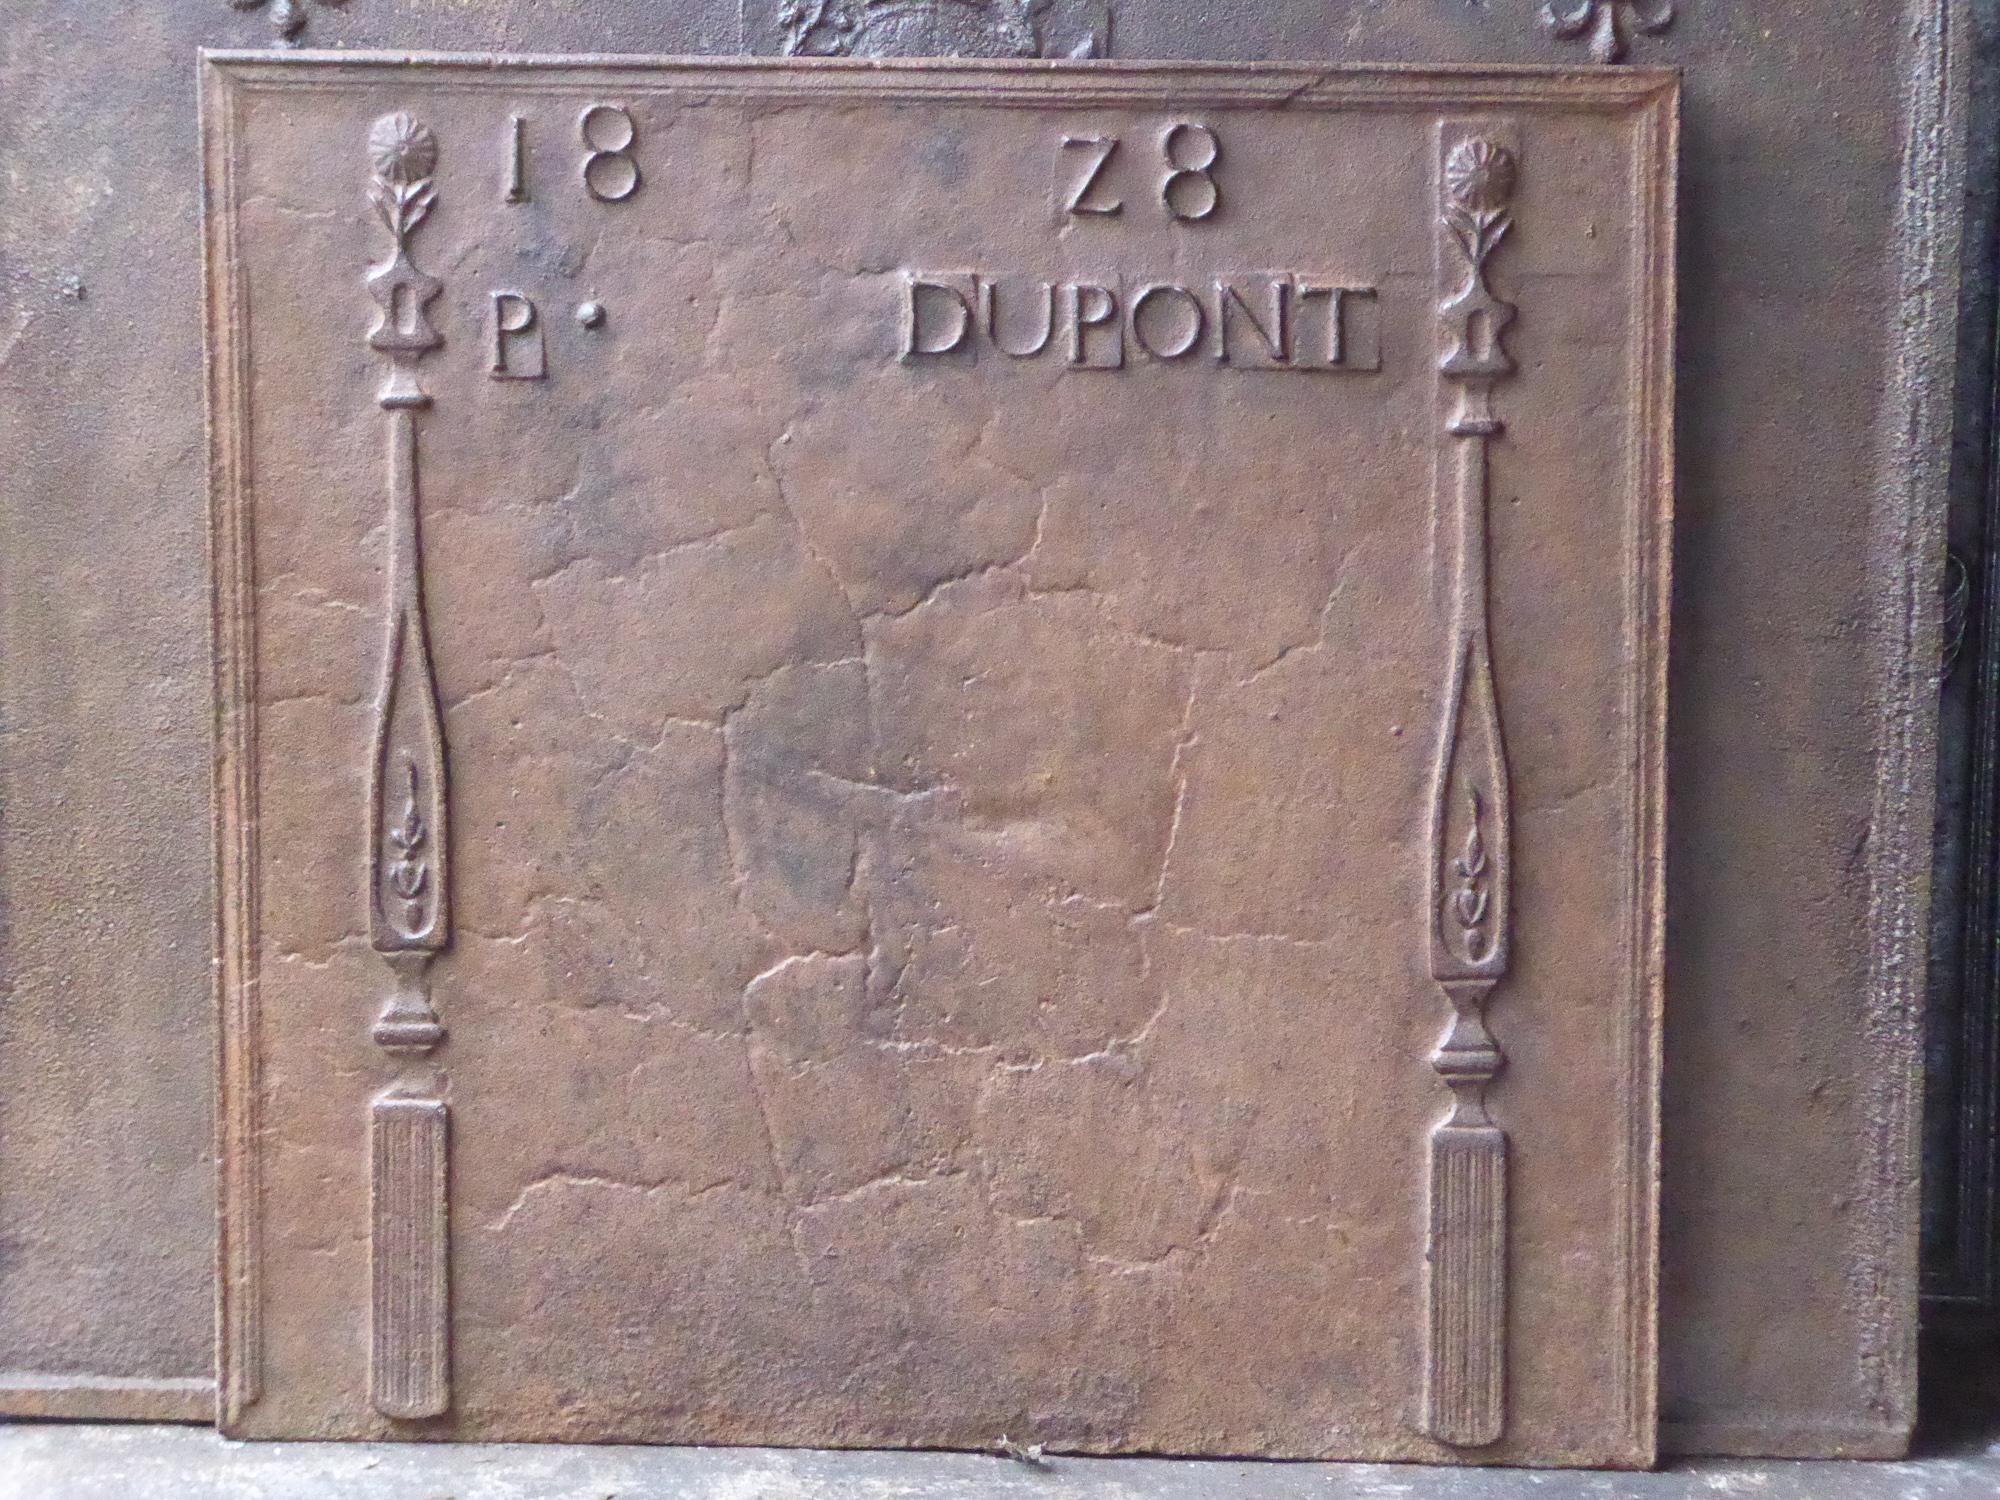 Plaque de cheminée néoclassique française du XIXe siècle avec deux piliers de la liberté. Les piliers symbolisent la valeur liberté, l'une des trois valeurs de la Révolution française. La date de production de la plaque de cheminée, 1828, est